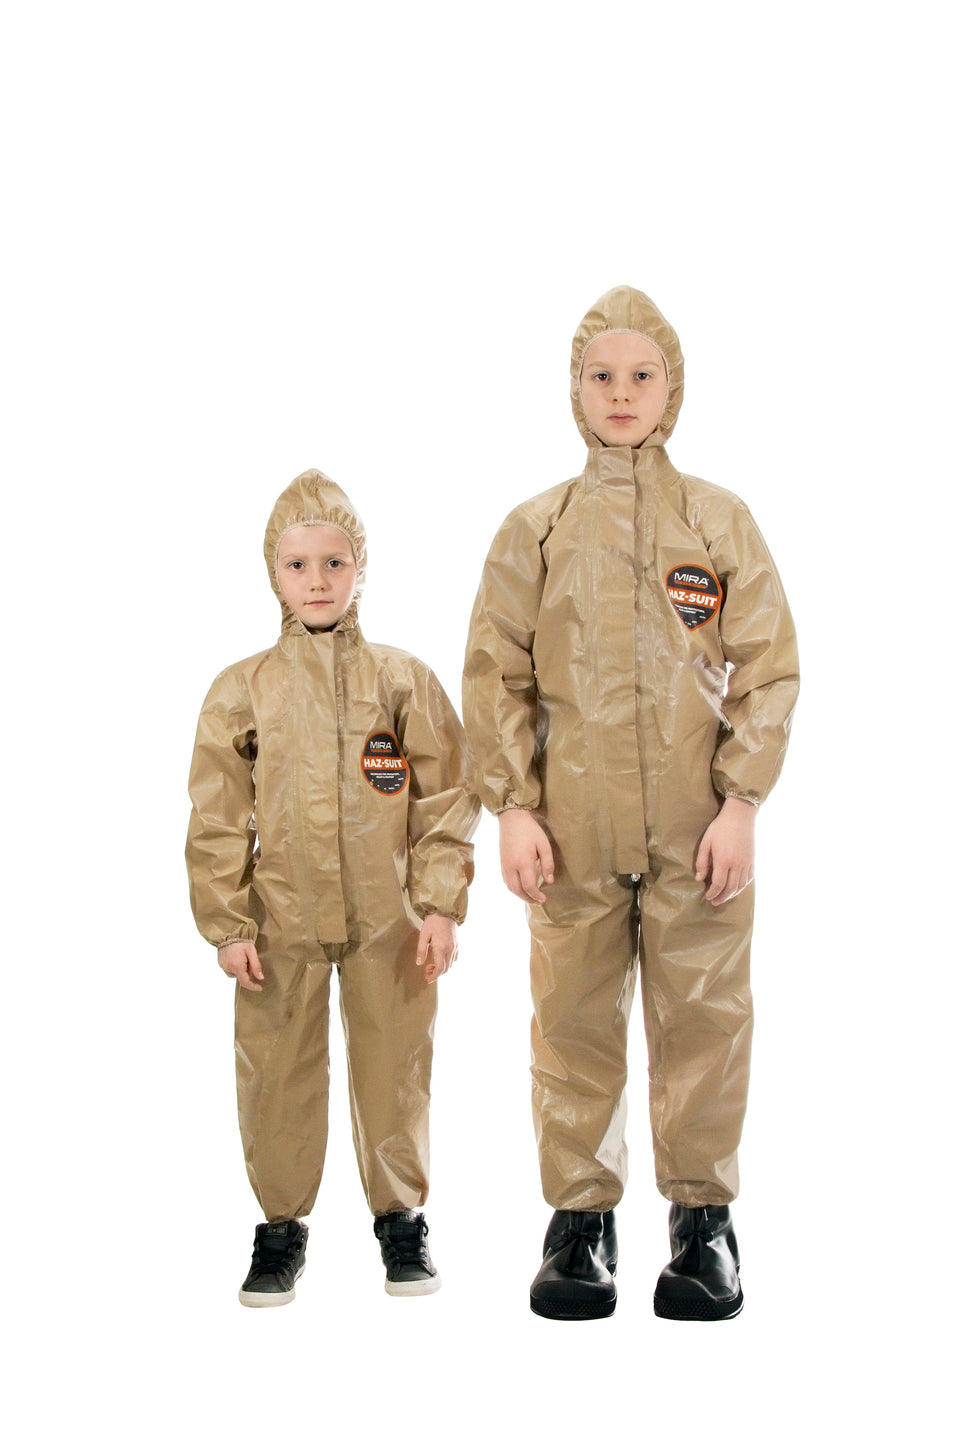 Two children wearing the HAZ-SUIT HAZMAT Suit